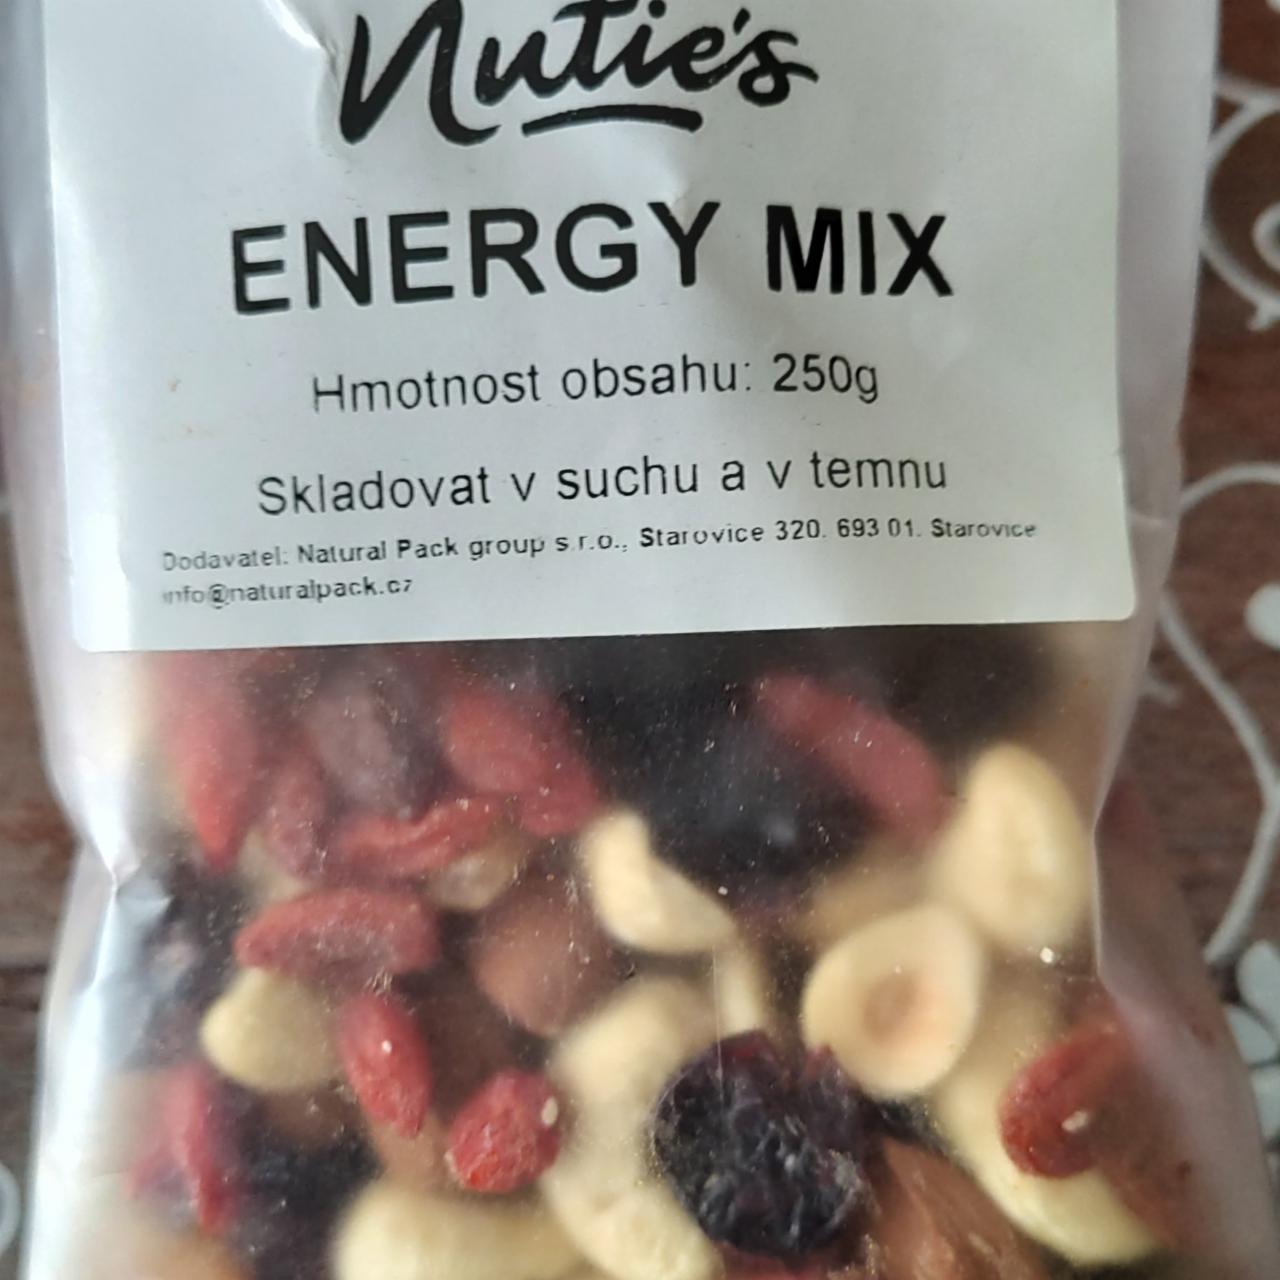 Fotografie - Energy mix Nuties